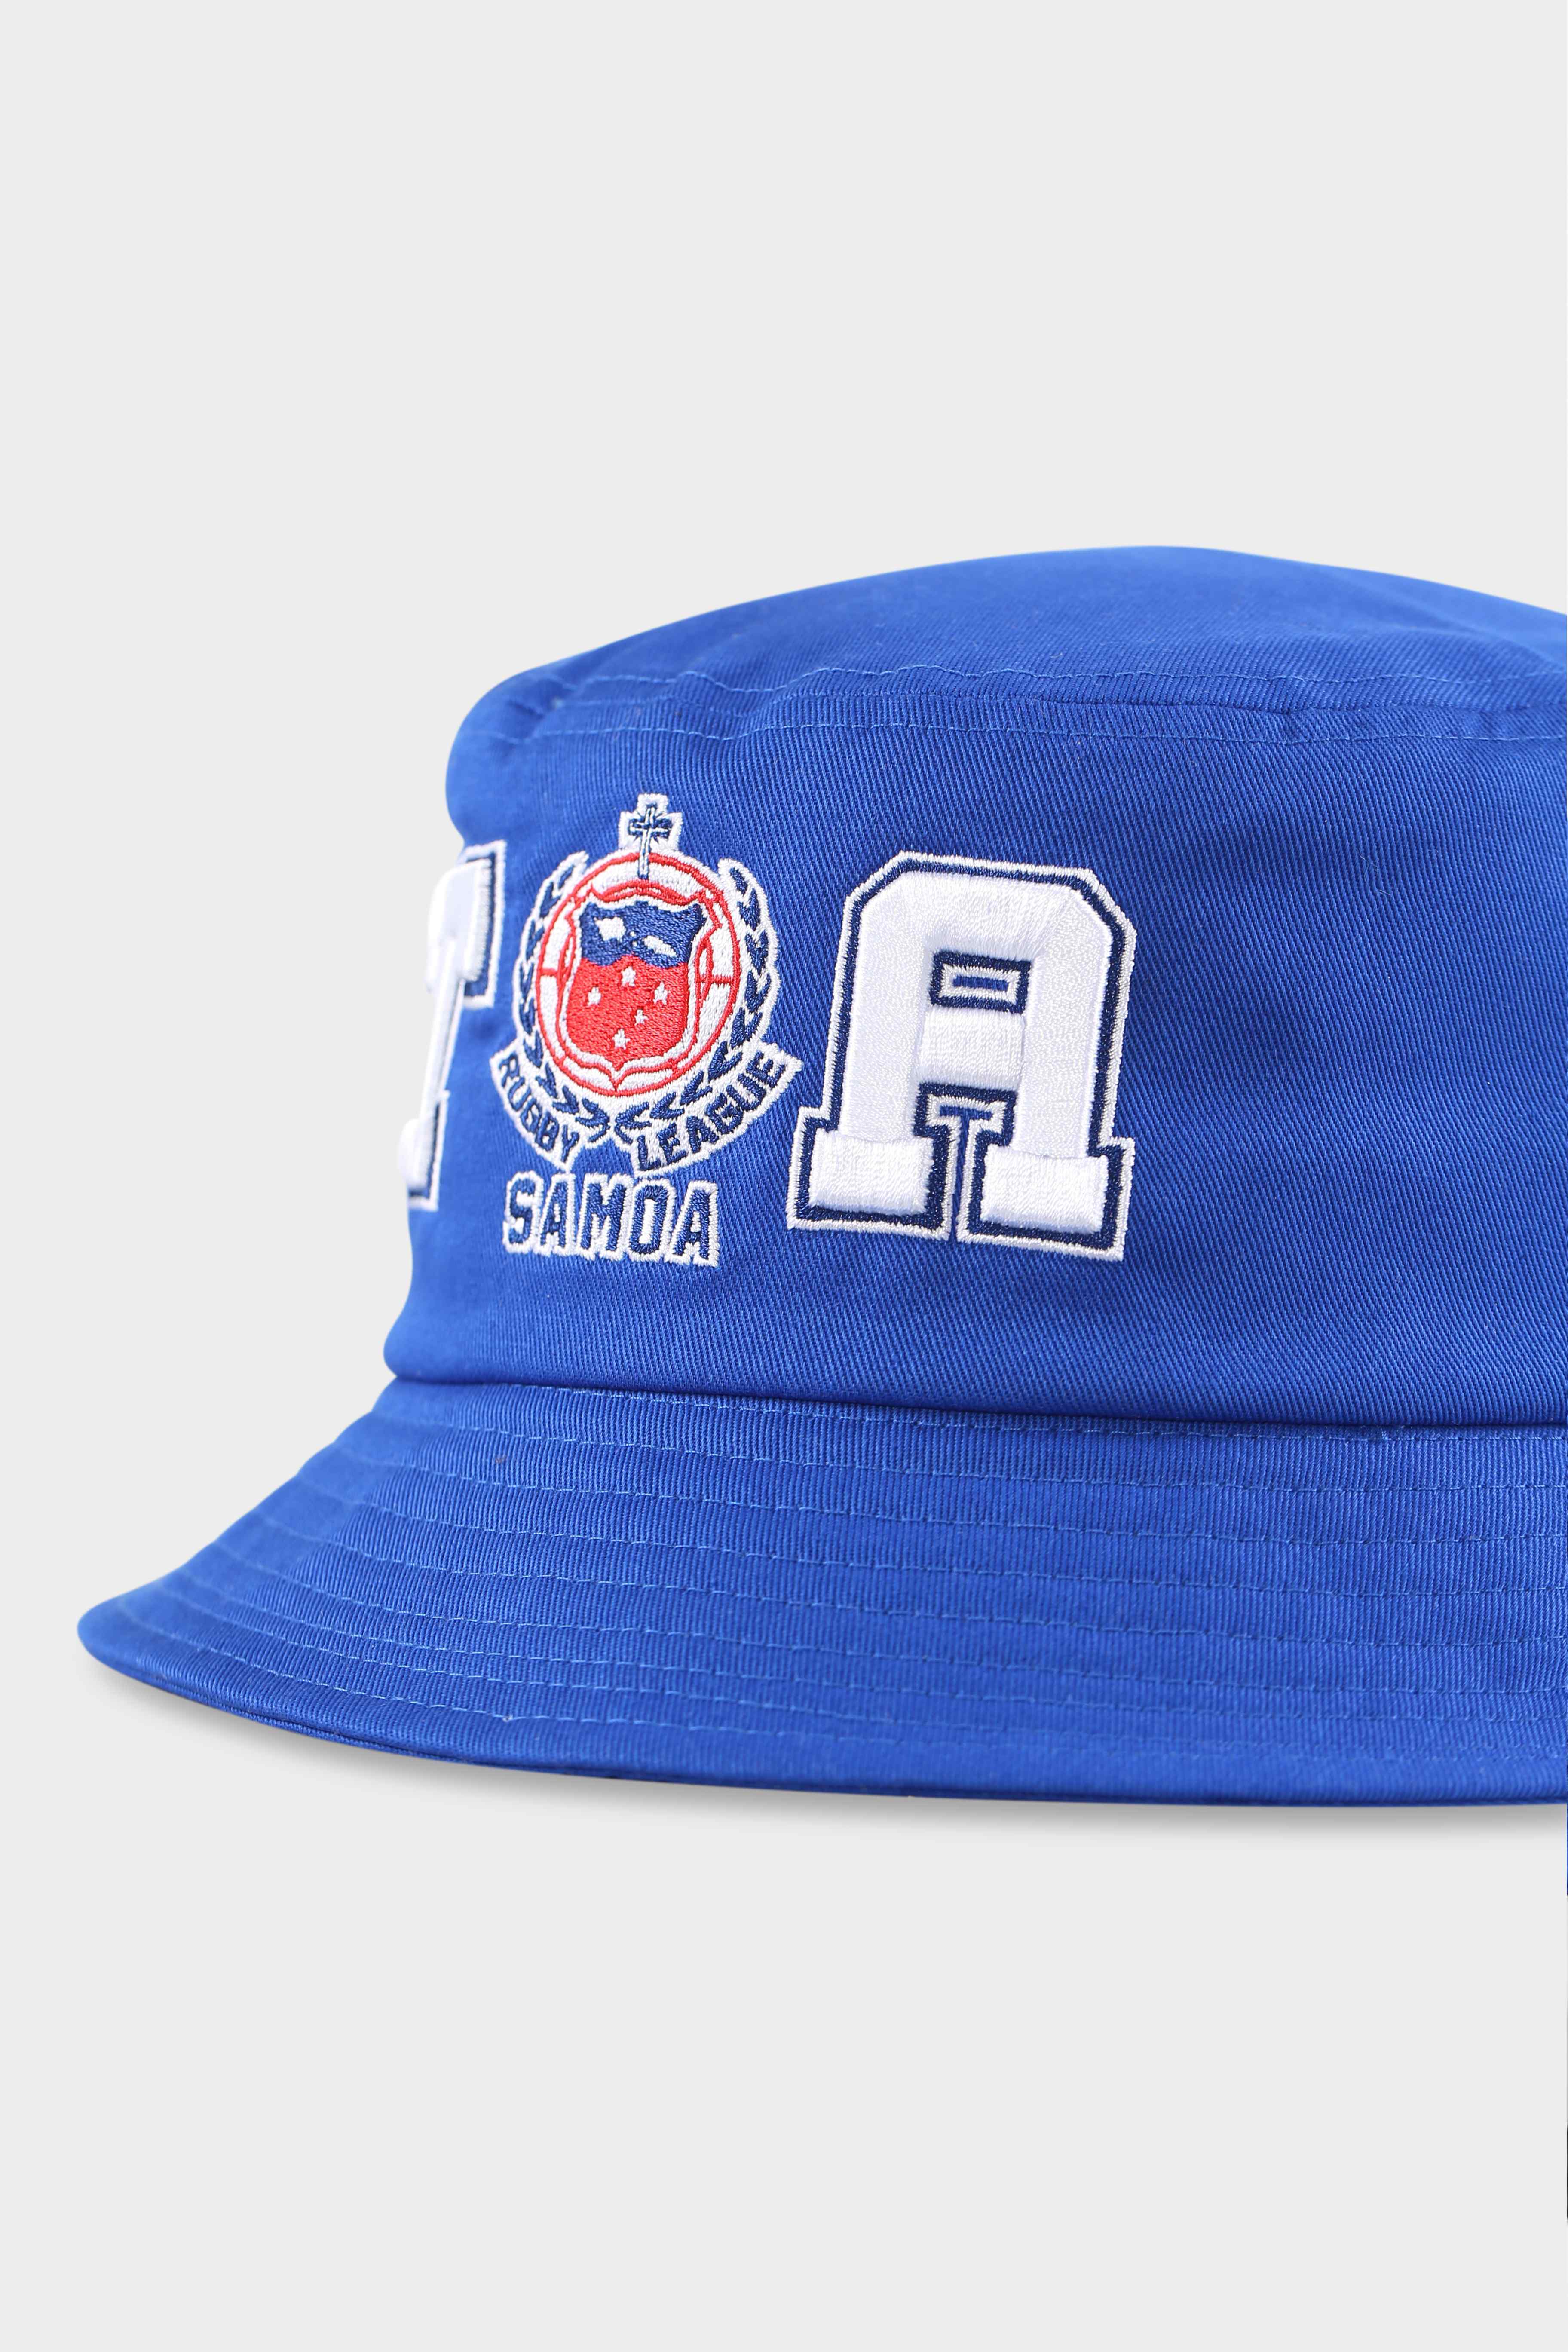 Toa Samoa Official Bucket Hat Blue